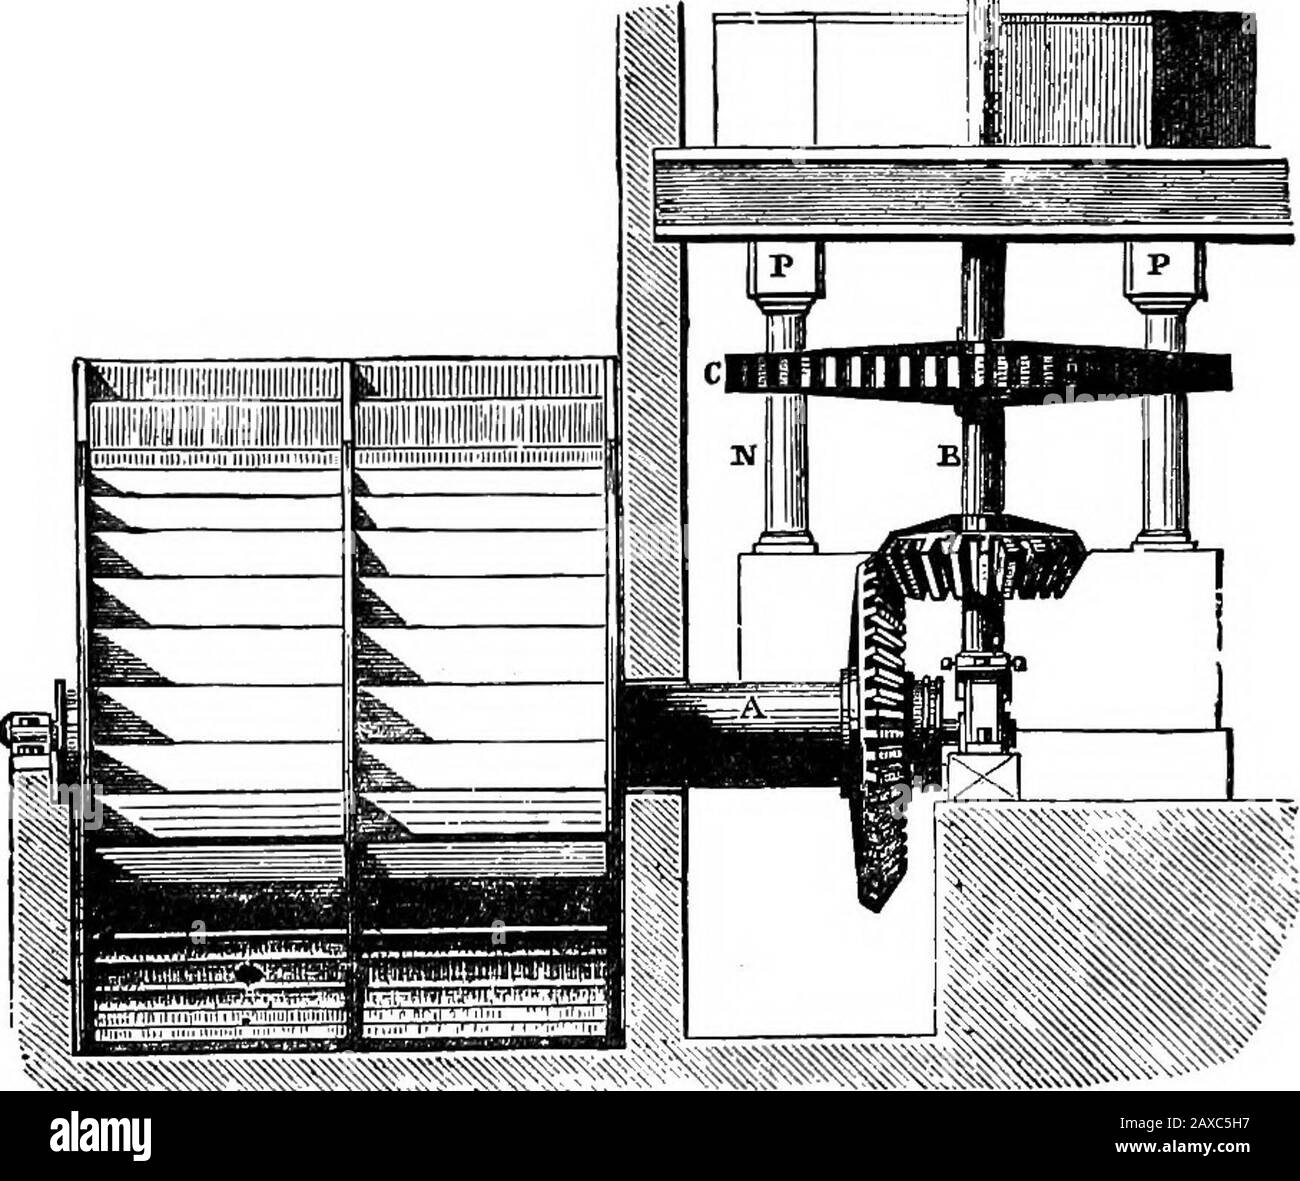 Divertissements scientifiques . Archimedian Screw, appelé après son inventeur, était l'un des premiers modes de collecte de l'eau. Il se compose d'un cylinderquelque peu incliné, et d'un tube plié comme une vis à l'intérieur. WATER-MIT, !, 129 en tournant la poignée de la vis, l'eau est aspirée et s'écoule du haut. La Ram d'eau est une machine utilisée pour élever l'eau à une grande hauteur au moyen de la dynamique de chute d'eau. ^^f?Sis#i roue De scierie. Le relevage hydraulique est familier pour nous tous, comme il fait dans les ourhotels, et nous avons seulement besoin de mentionner ces appareils ici; les descriptions complètes seront trouvées dans Cy Banque D'Images